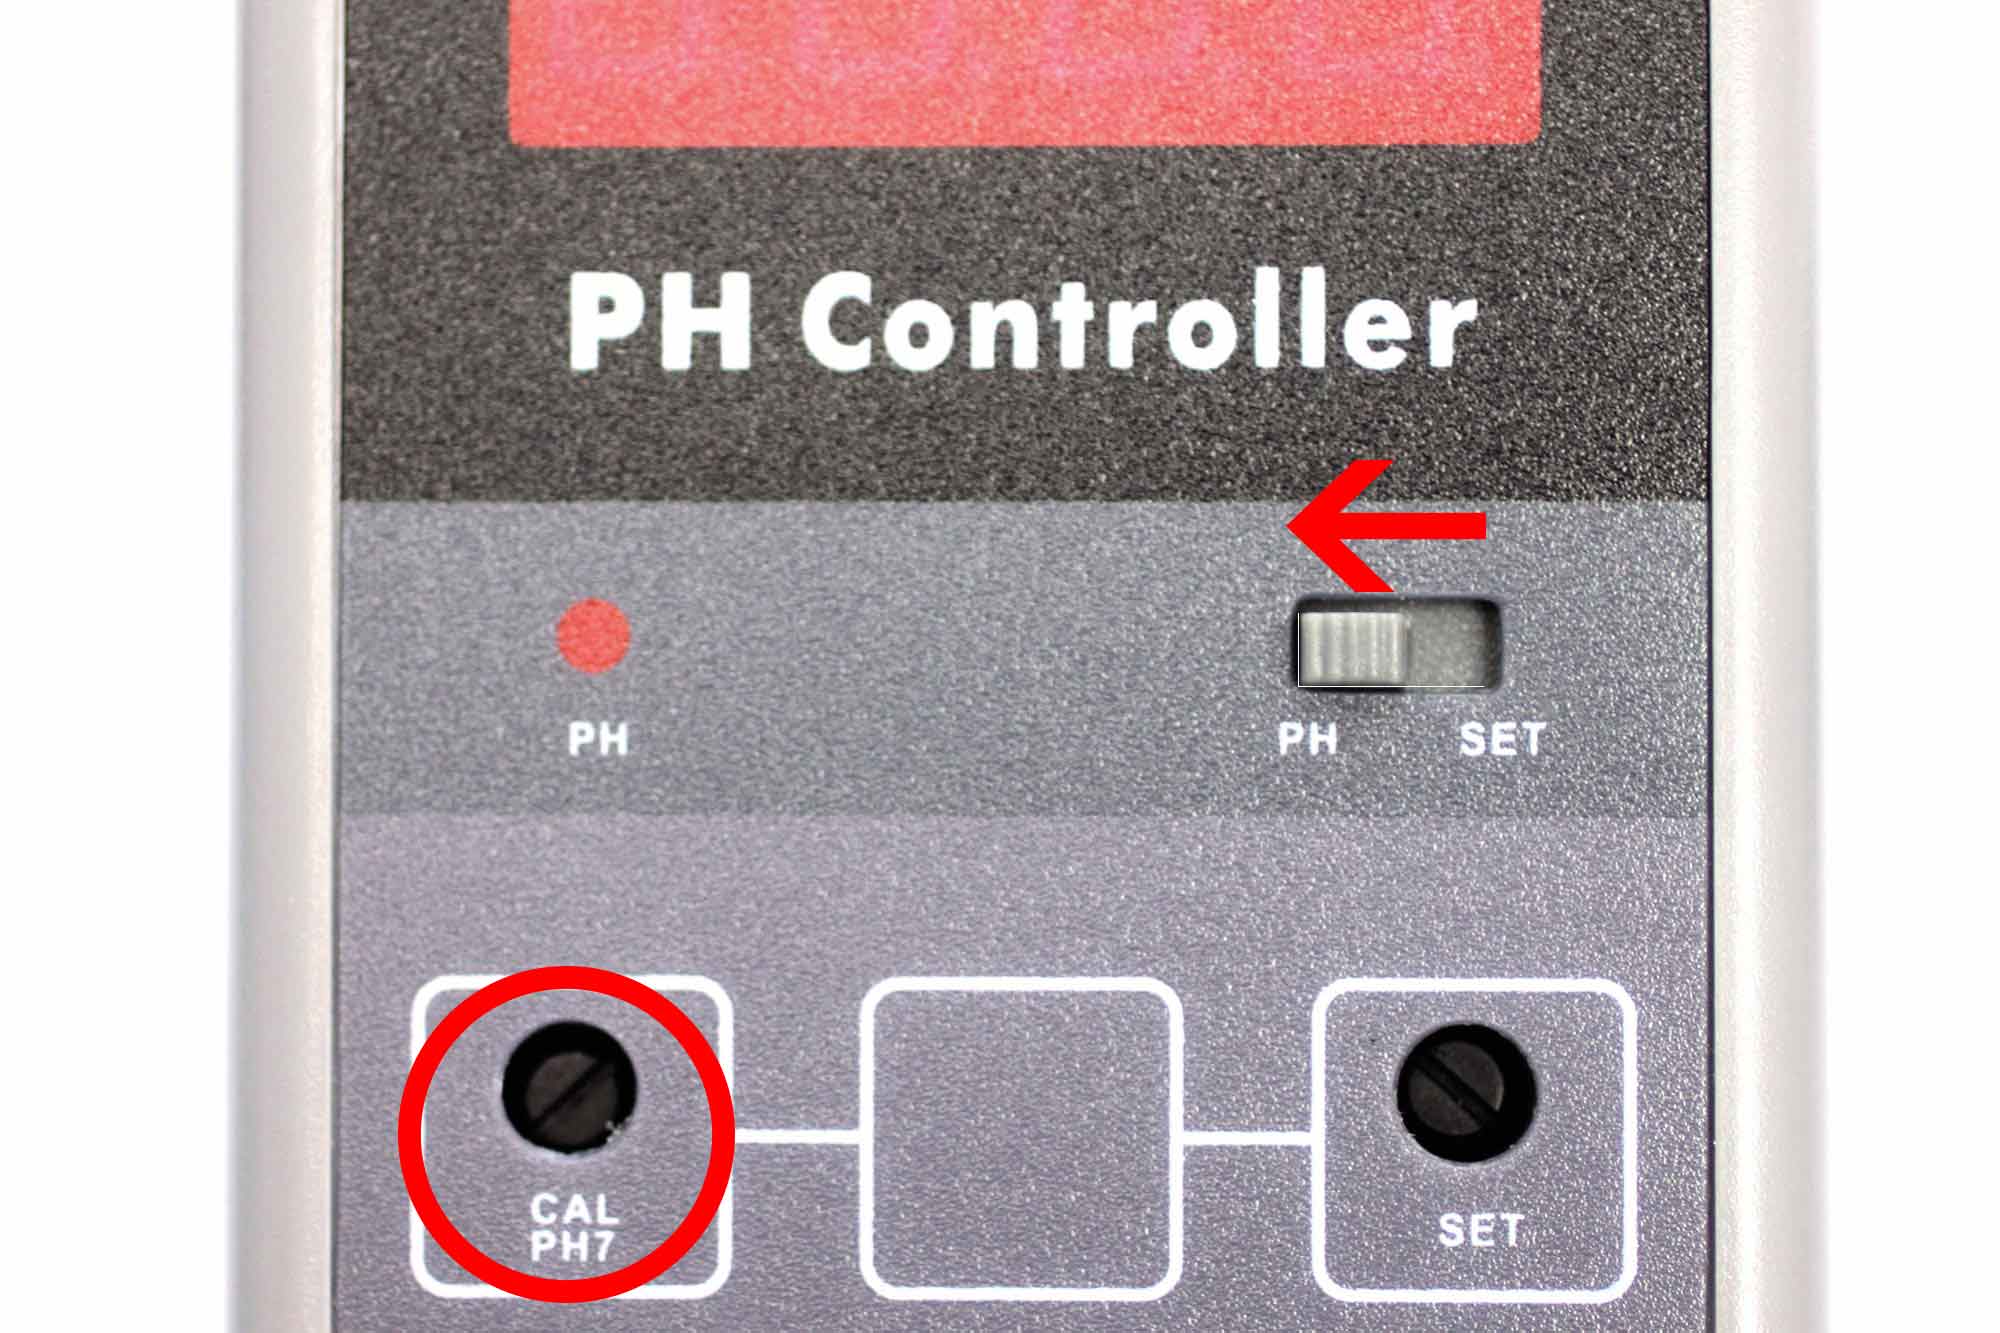 Prise du contrôleur de pH